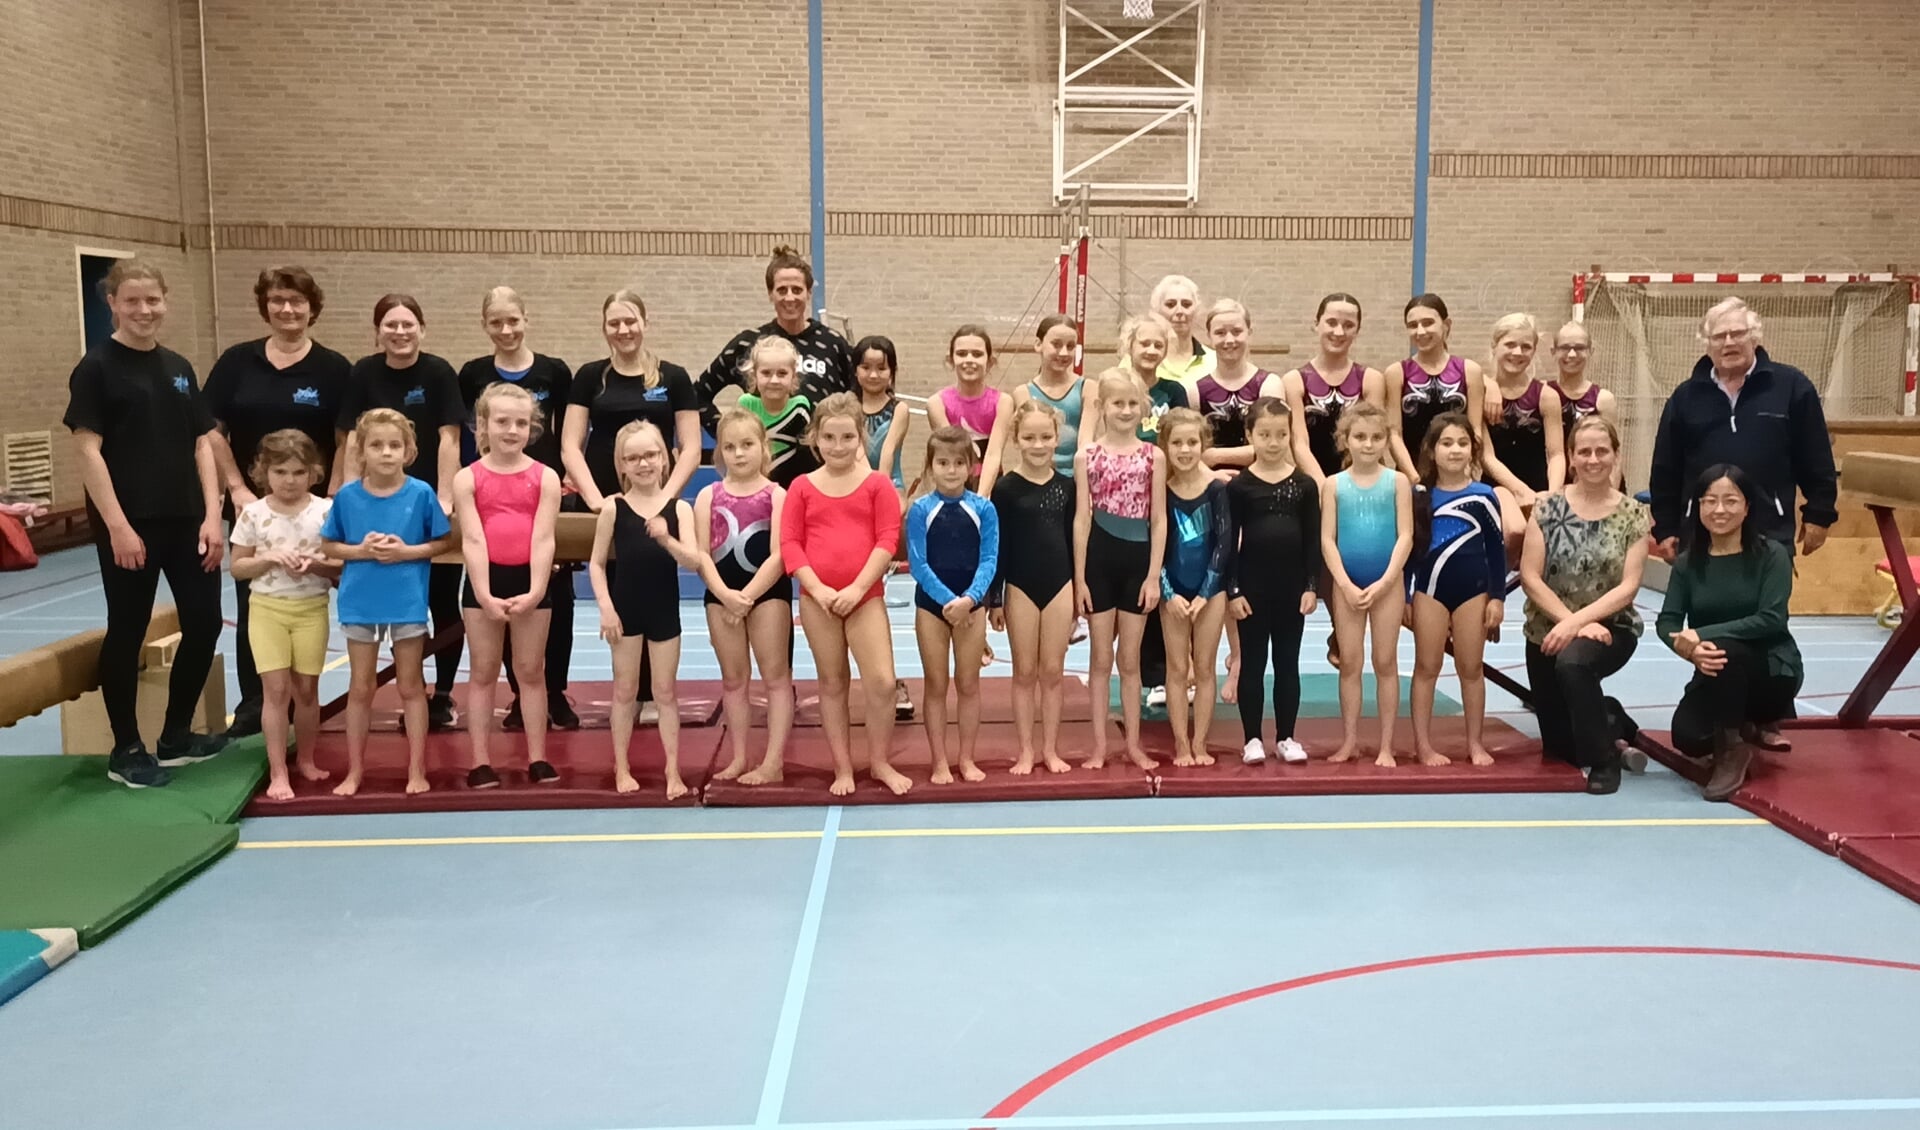 DOK-Delft is al 75 jaar een begrip in de gymnastiekwereld